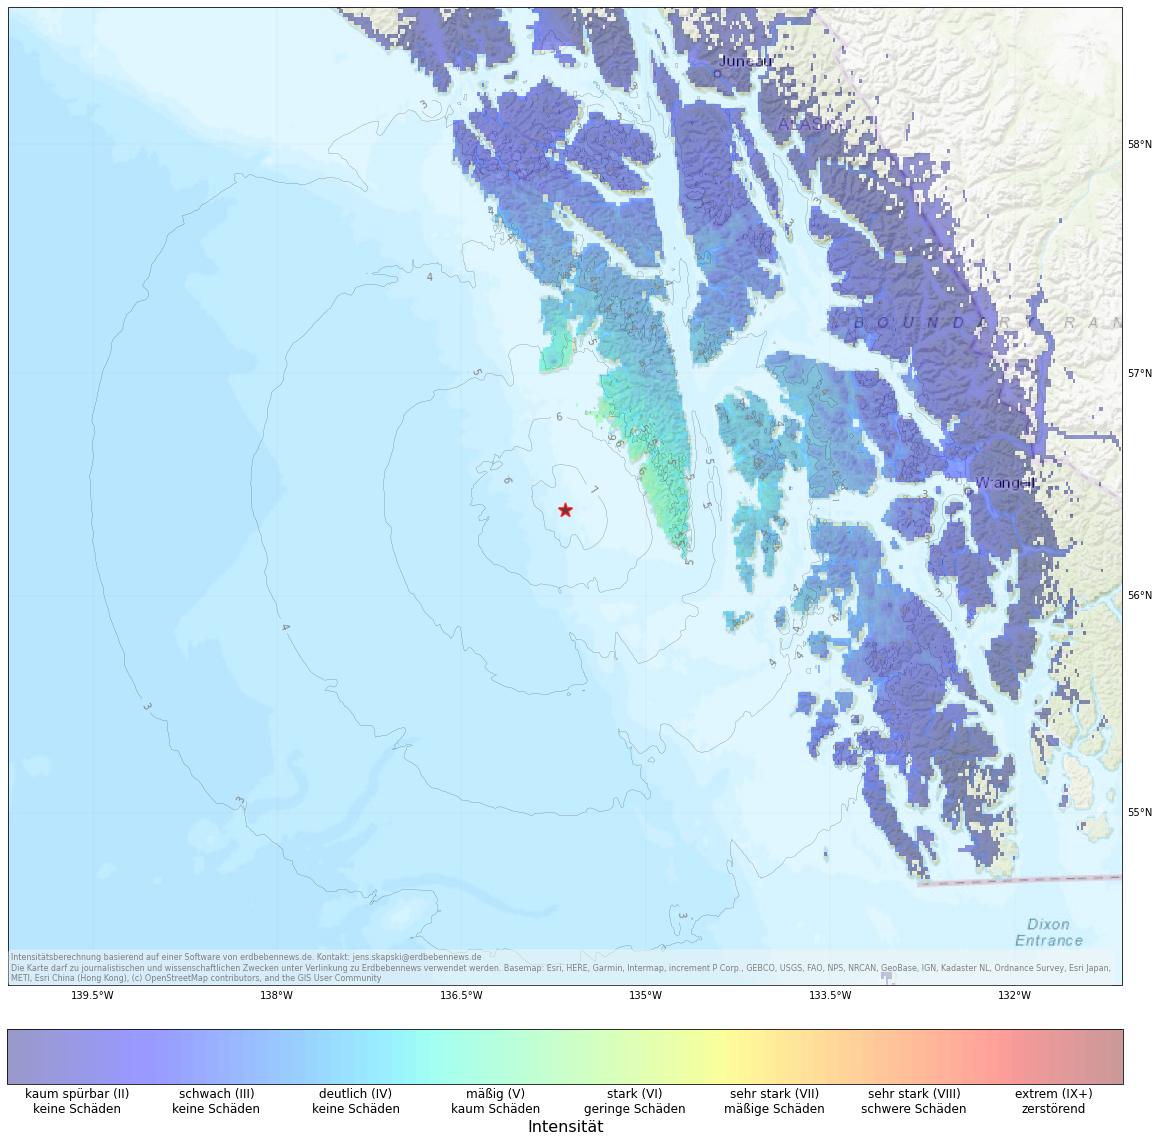 Berechnete Intensität (ShakeMap) des Erdbebens der Stärke 5.9 am 12. Januar, 8:46 Uhr in USA